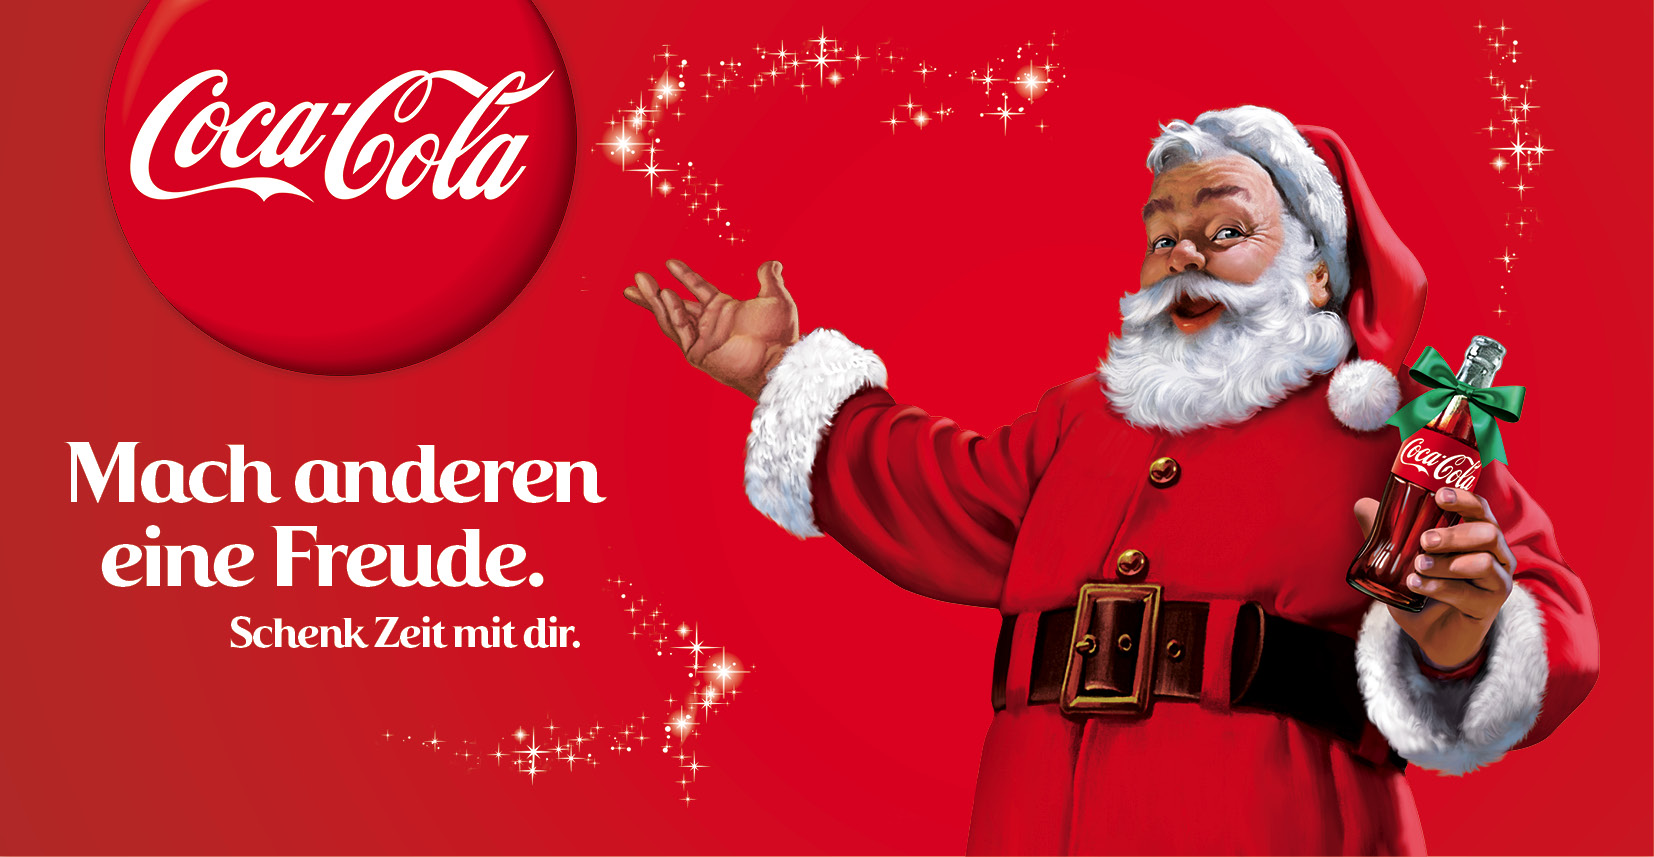 Coca Cola Werbung zu Weihnachten 2015